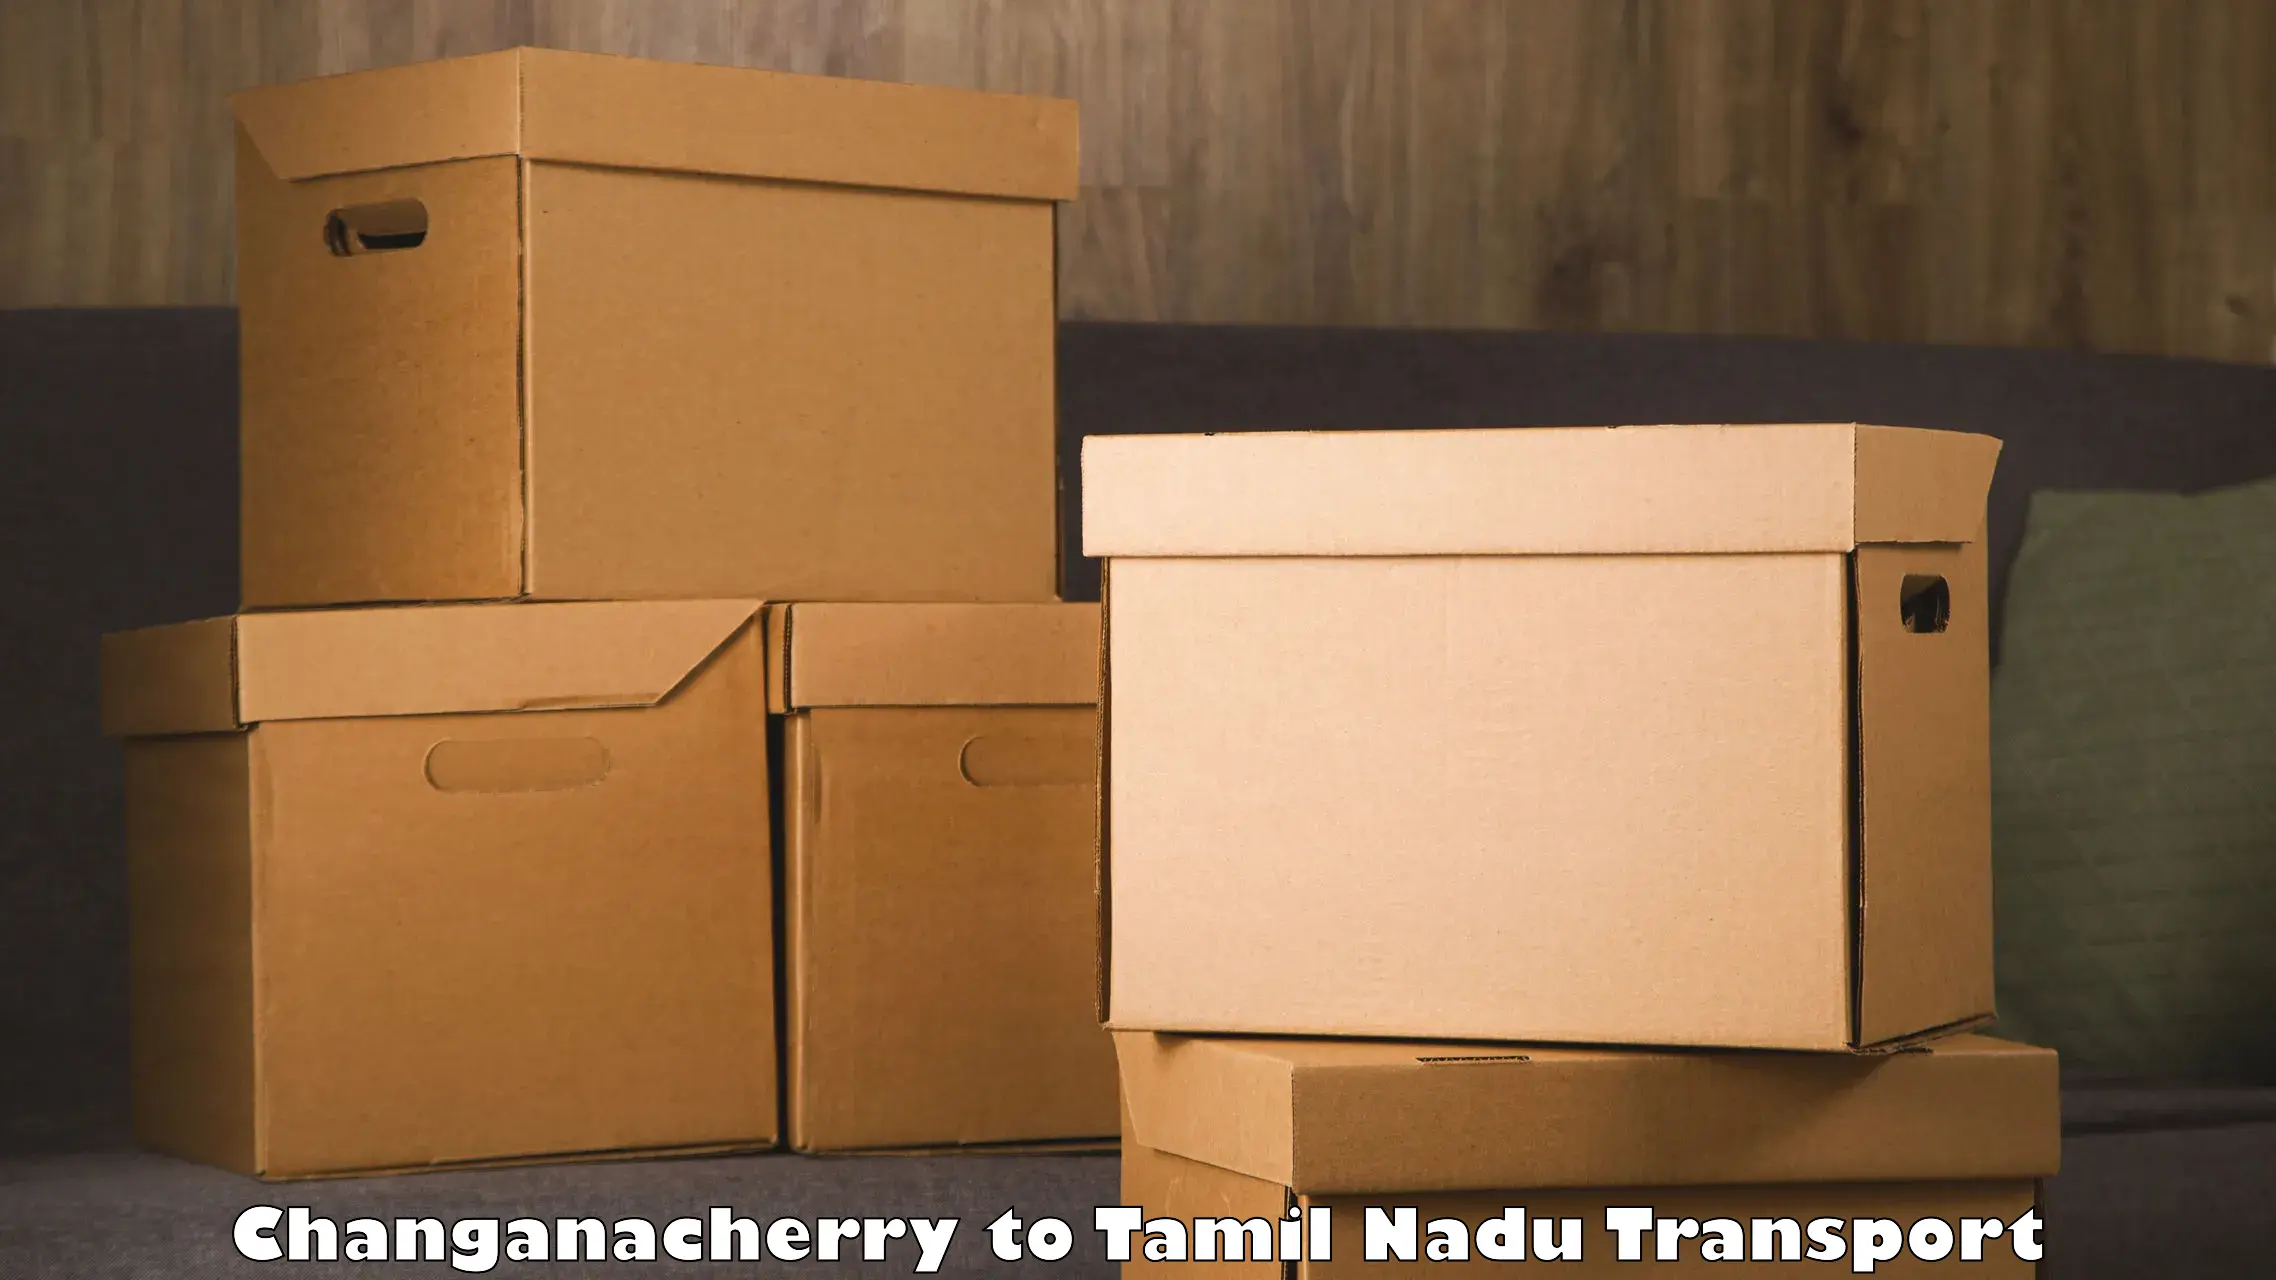 Cargo train transport services Changanacherry to Mannargudi